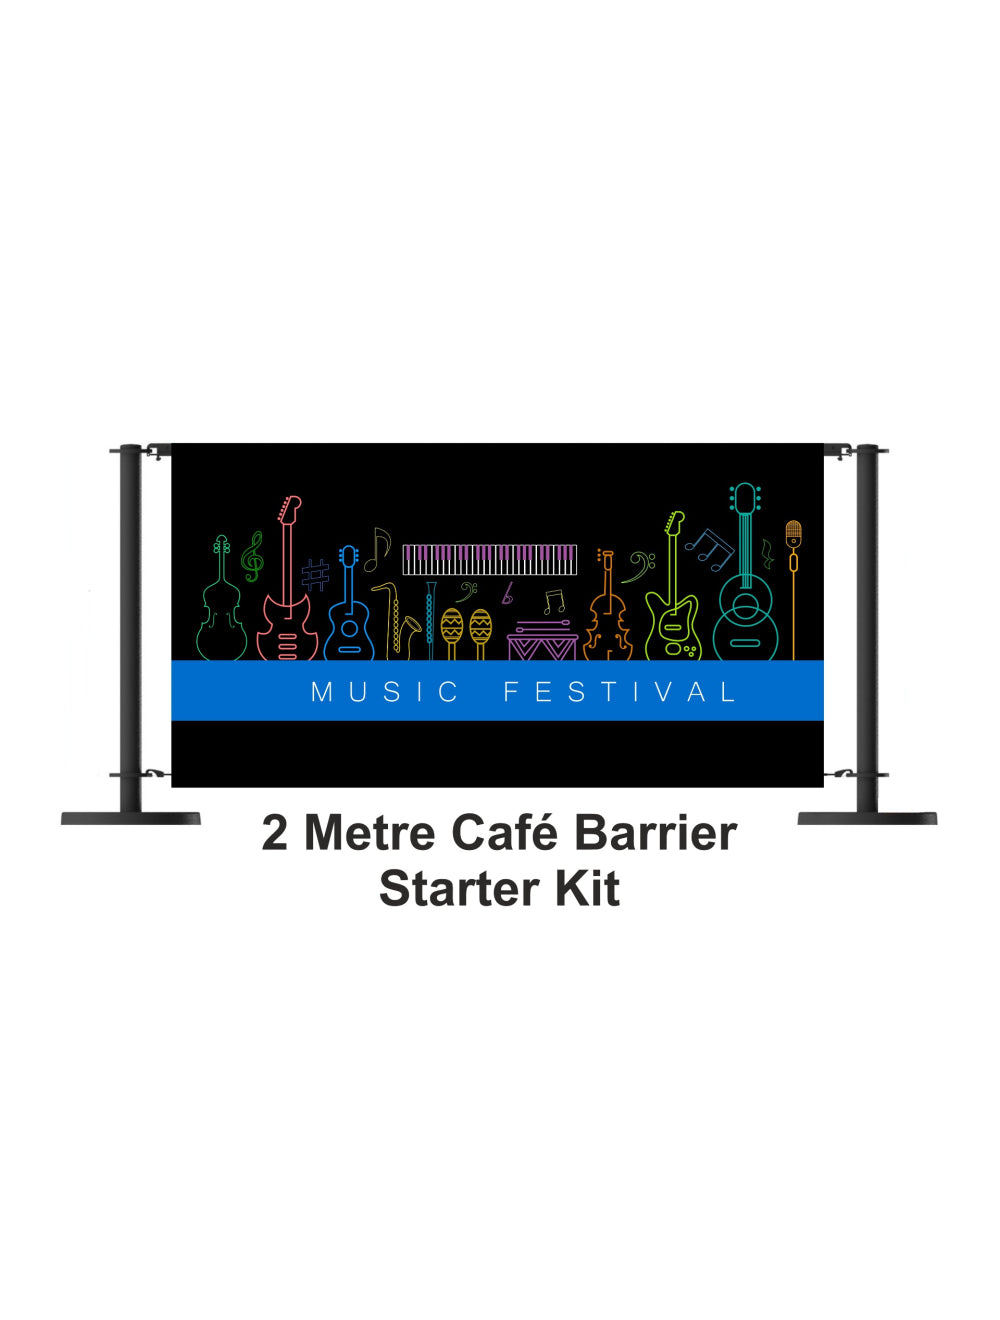 Početni komplet barijera za kafiće od 2 metra